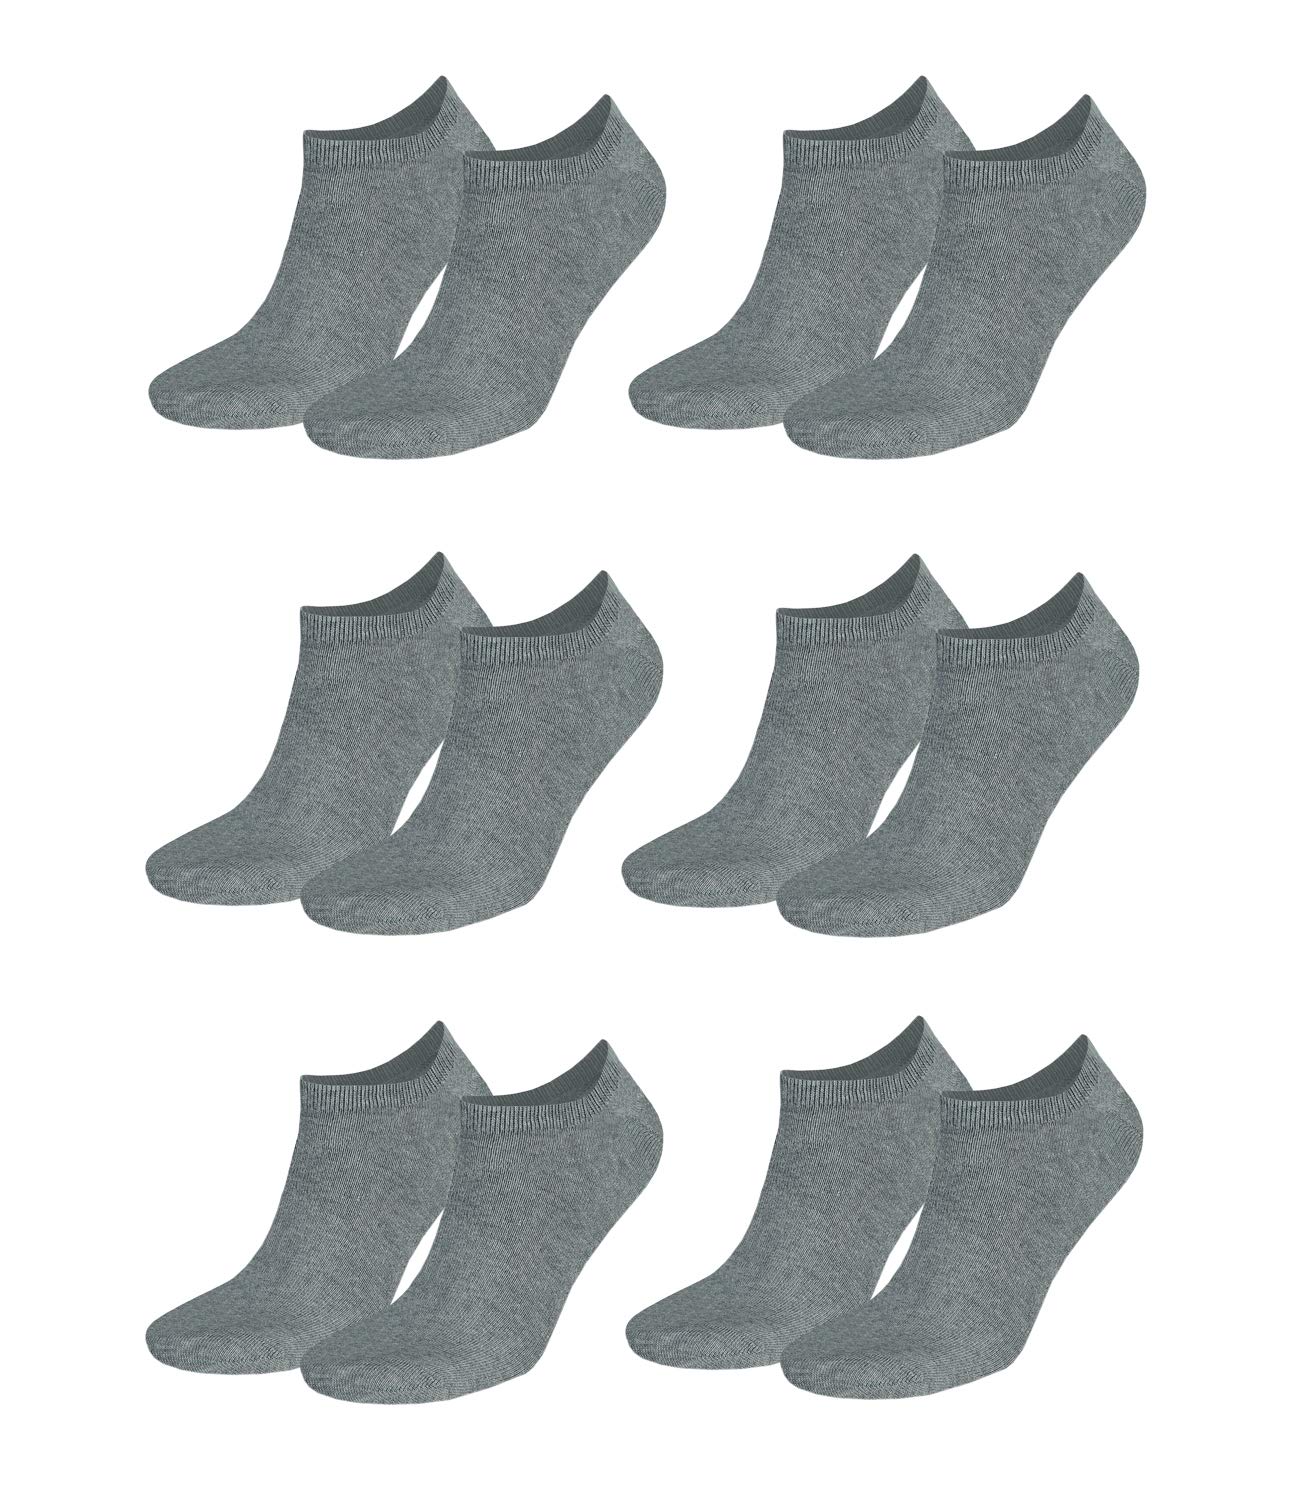 Tommy Hilfiger Herren Classic Sneaker 342023001 6Paar, Farbe:Grau, Größe:47-49, Artikel:Sneaker middle grey mel. 342023001-758